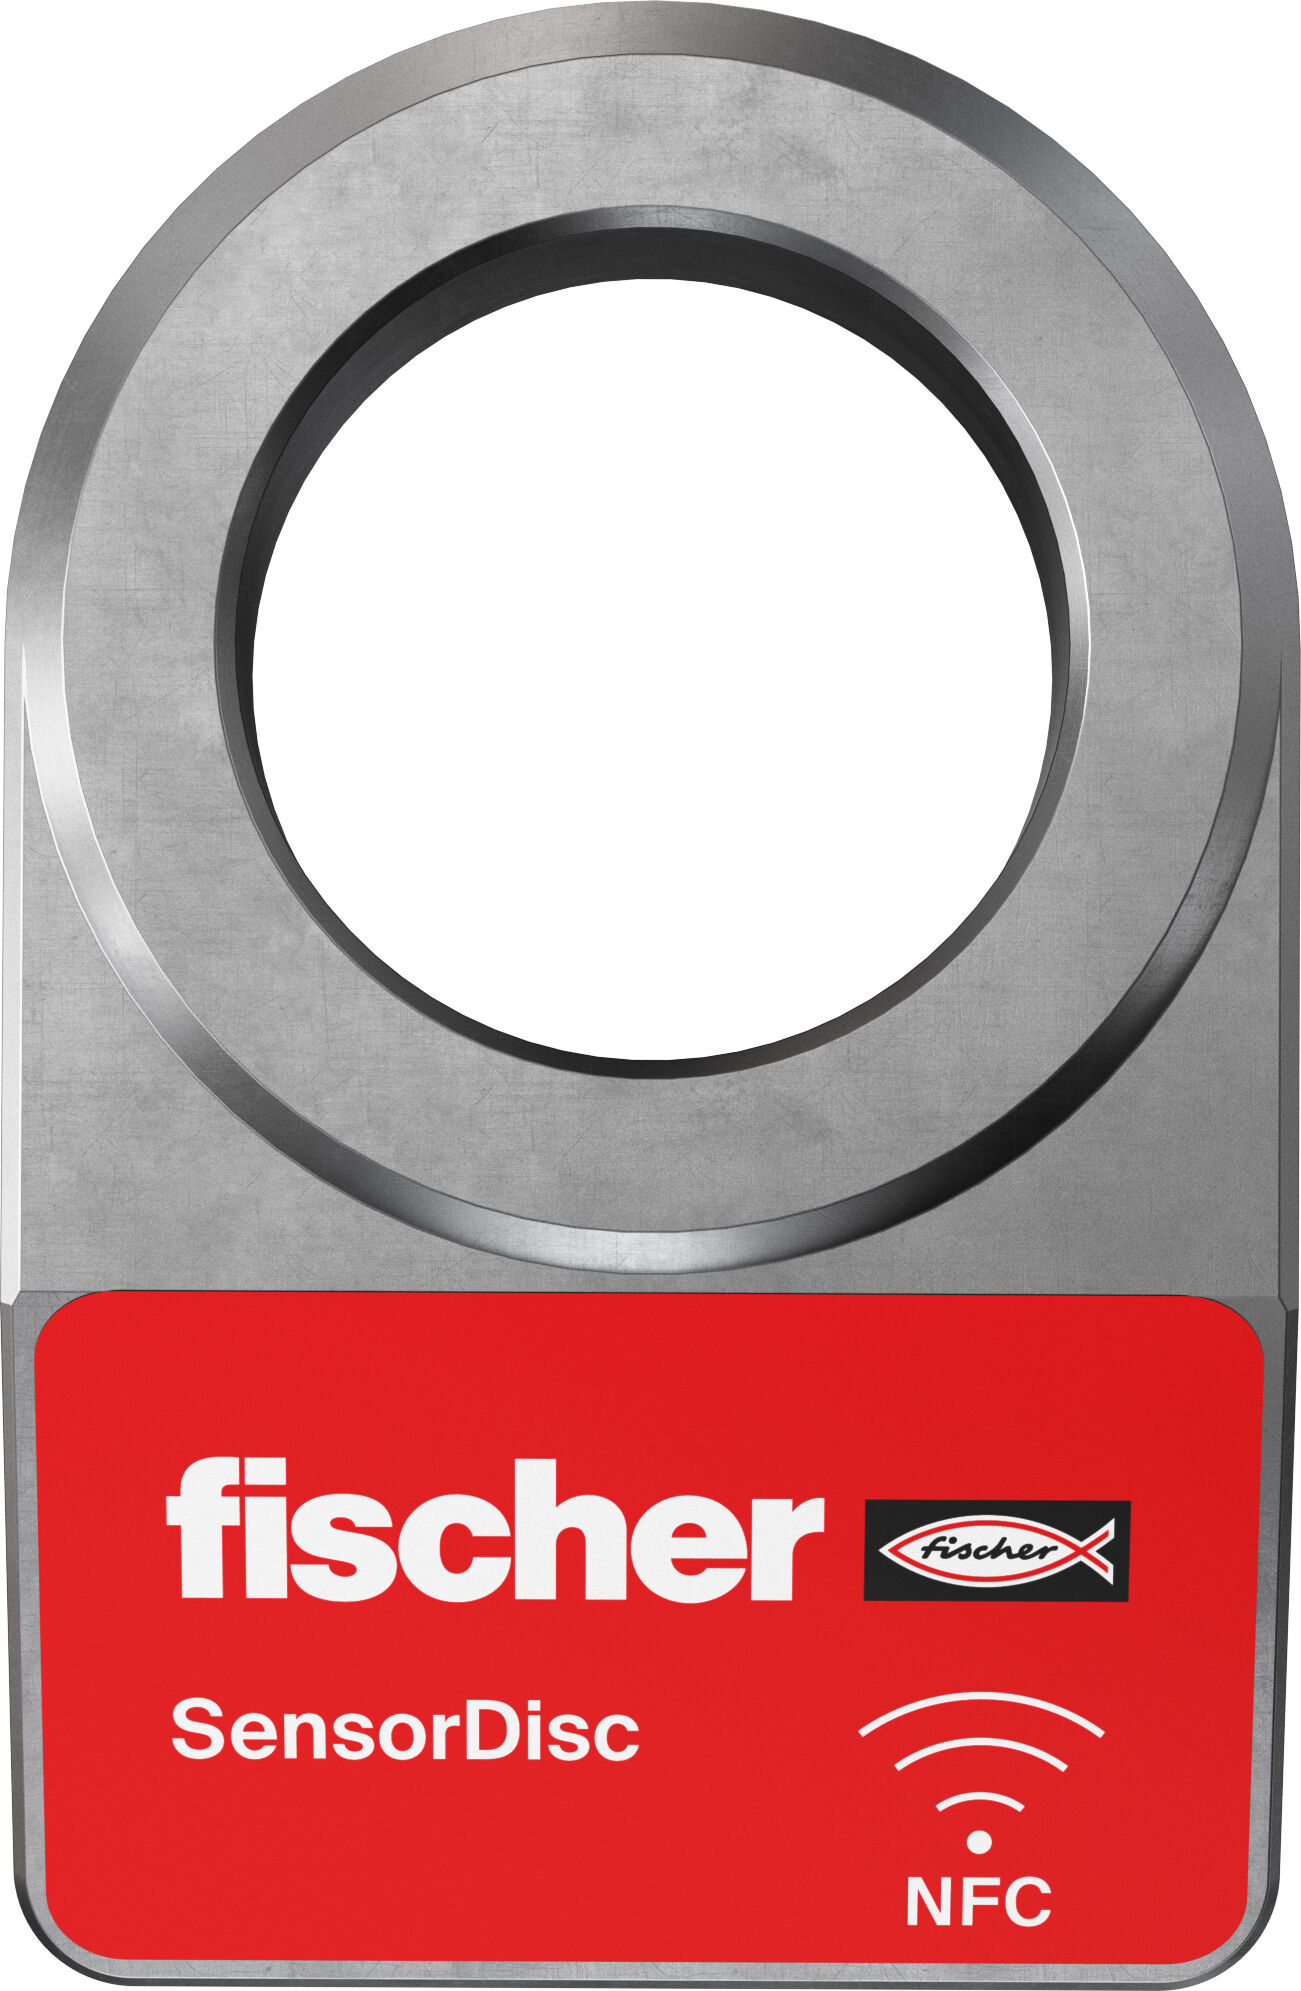 Products - fischer international